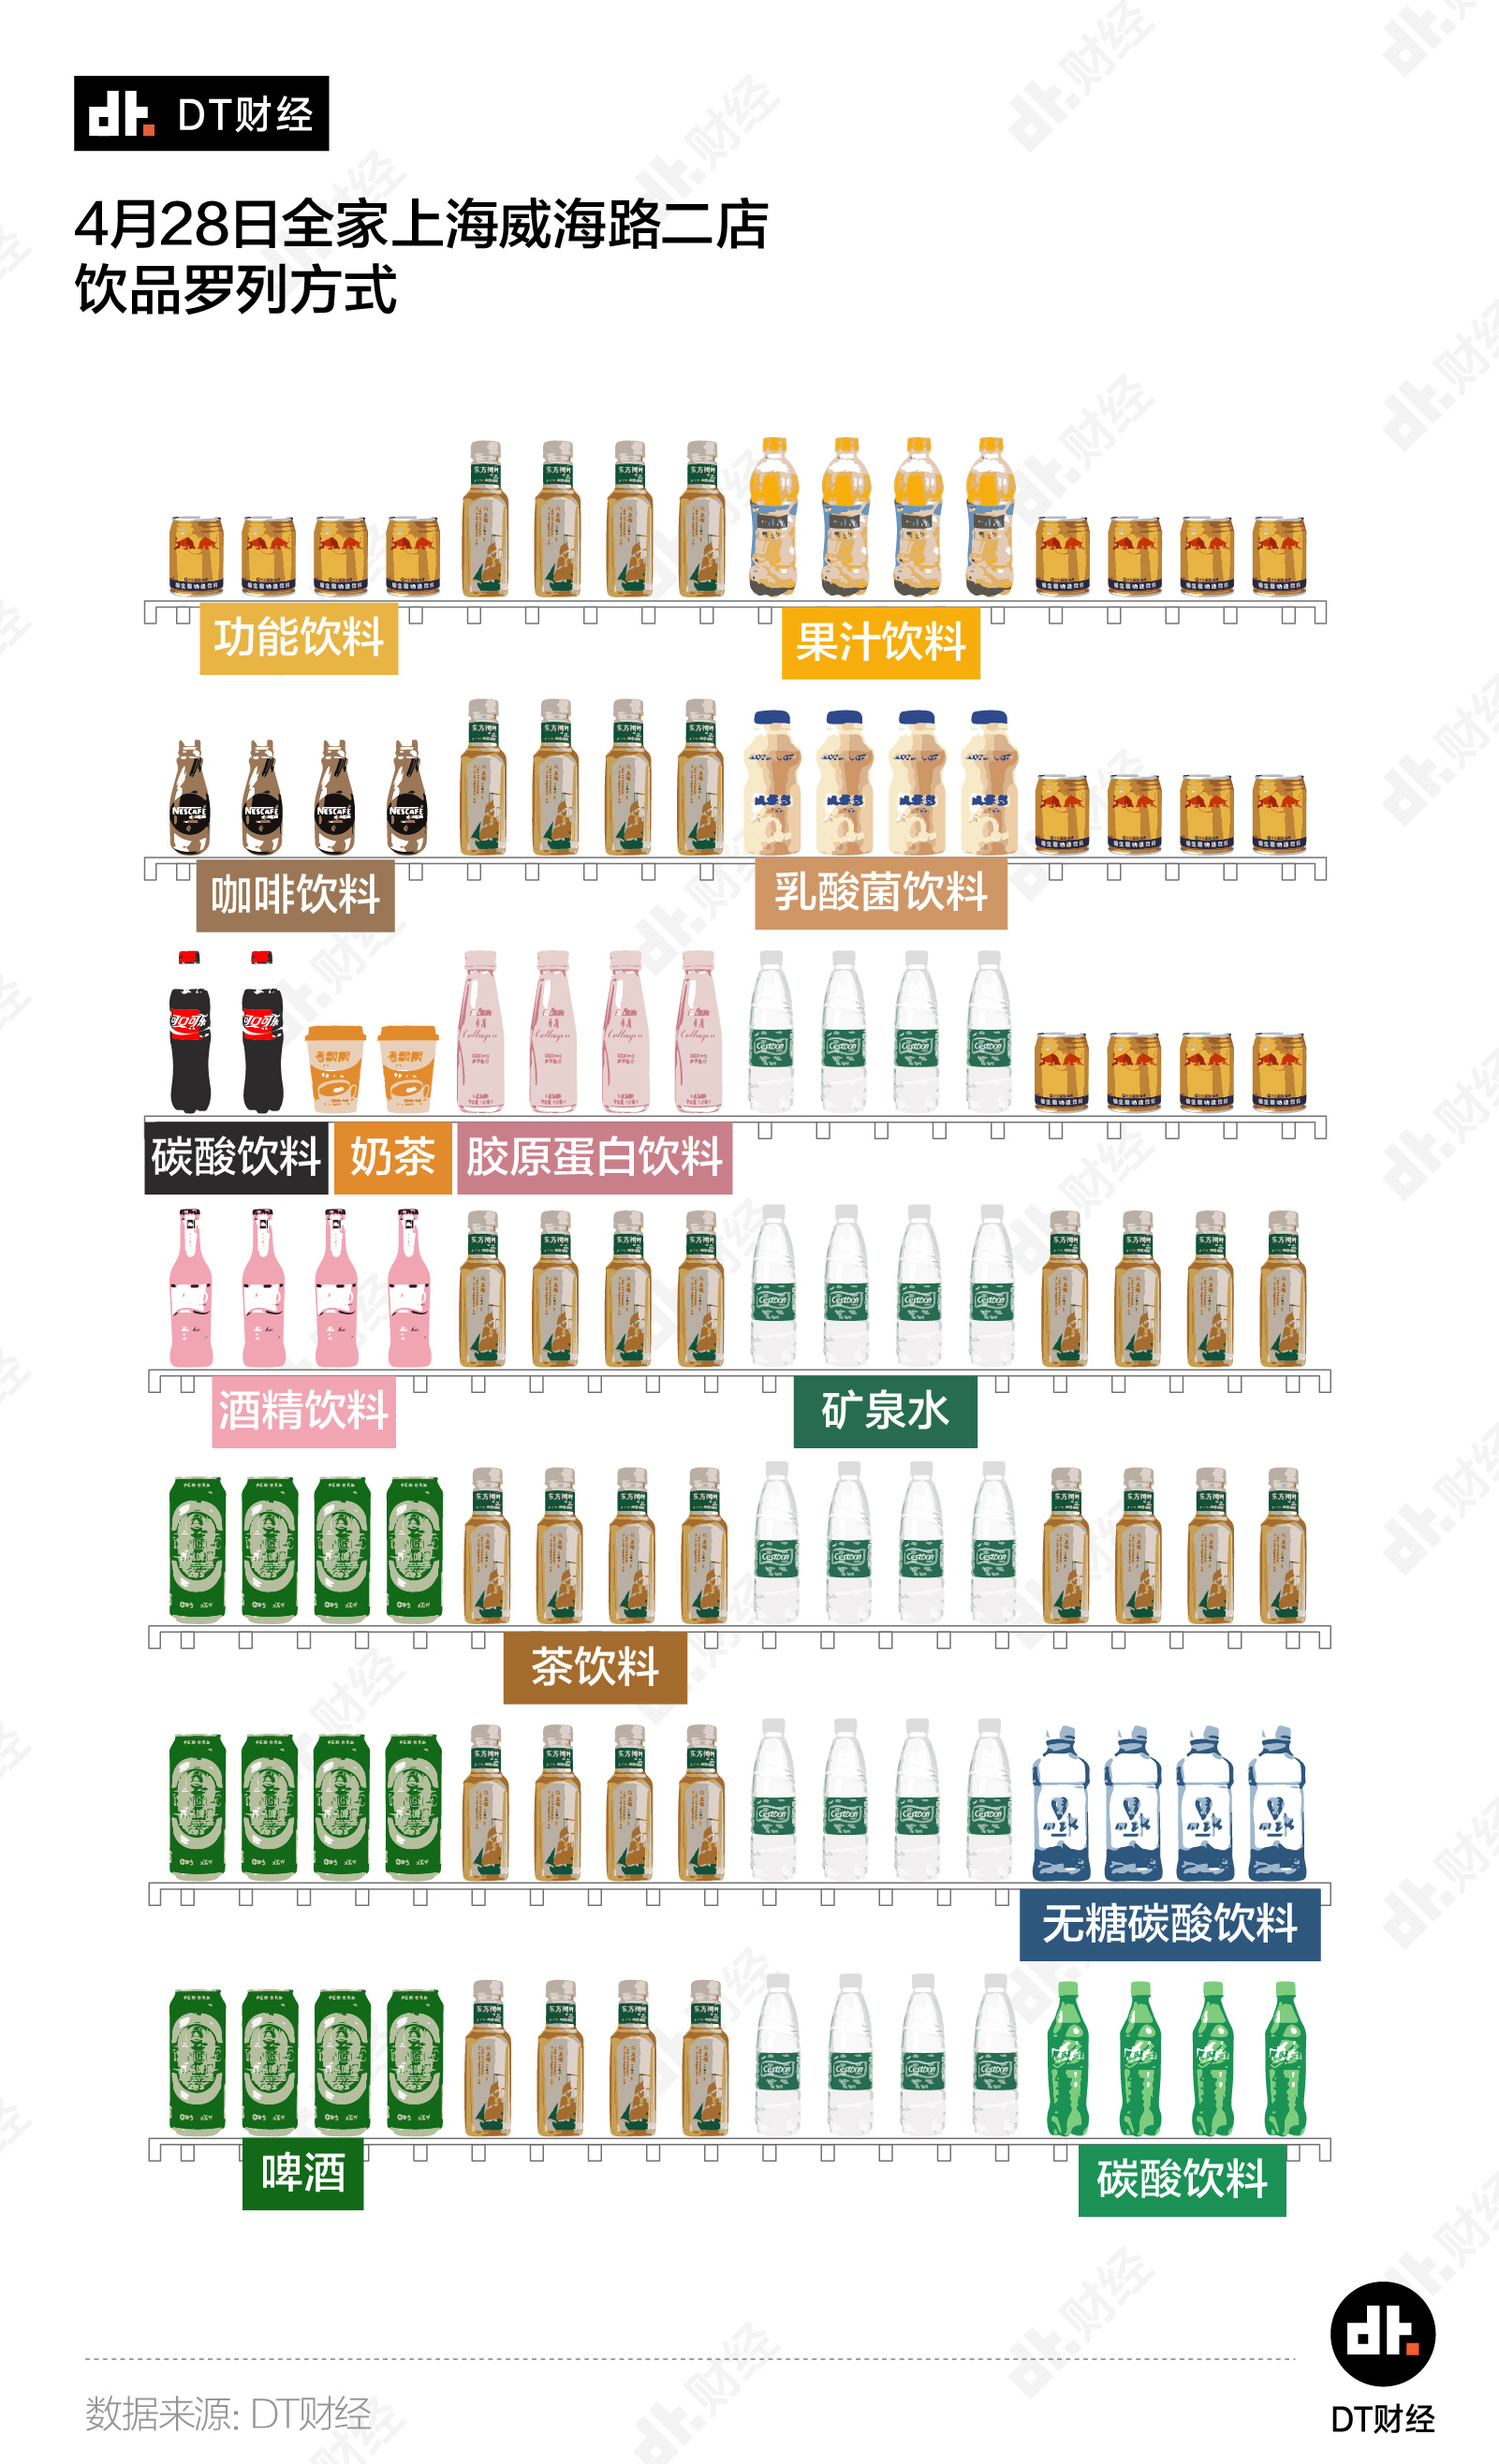 饮料名称一览表及图片图片